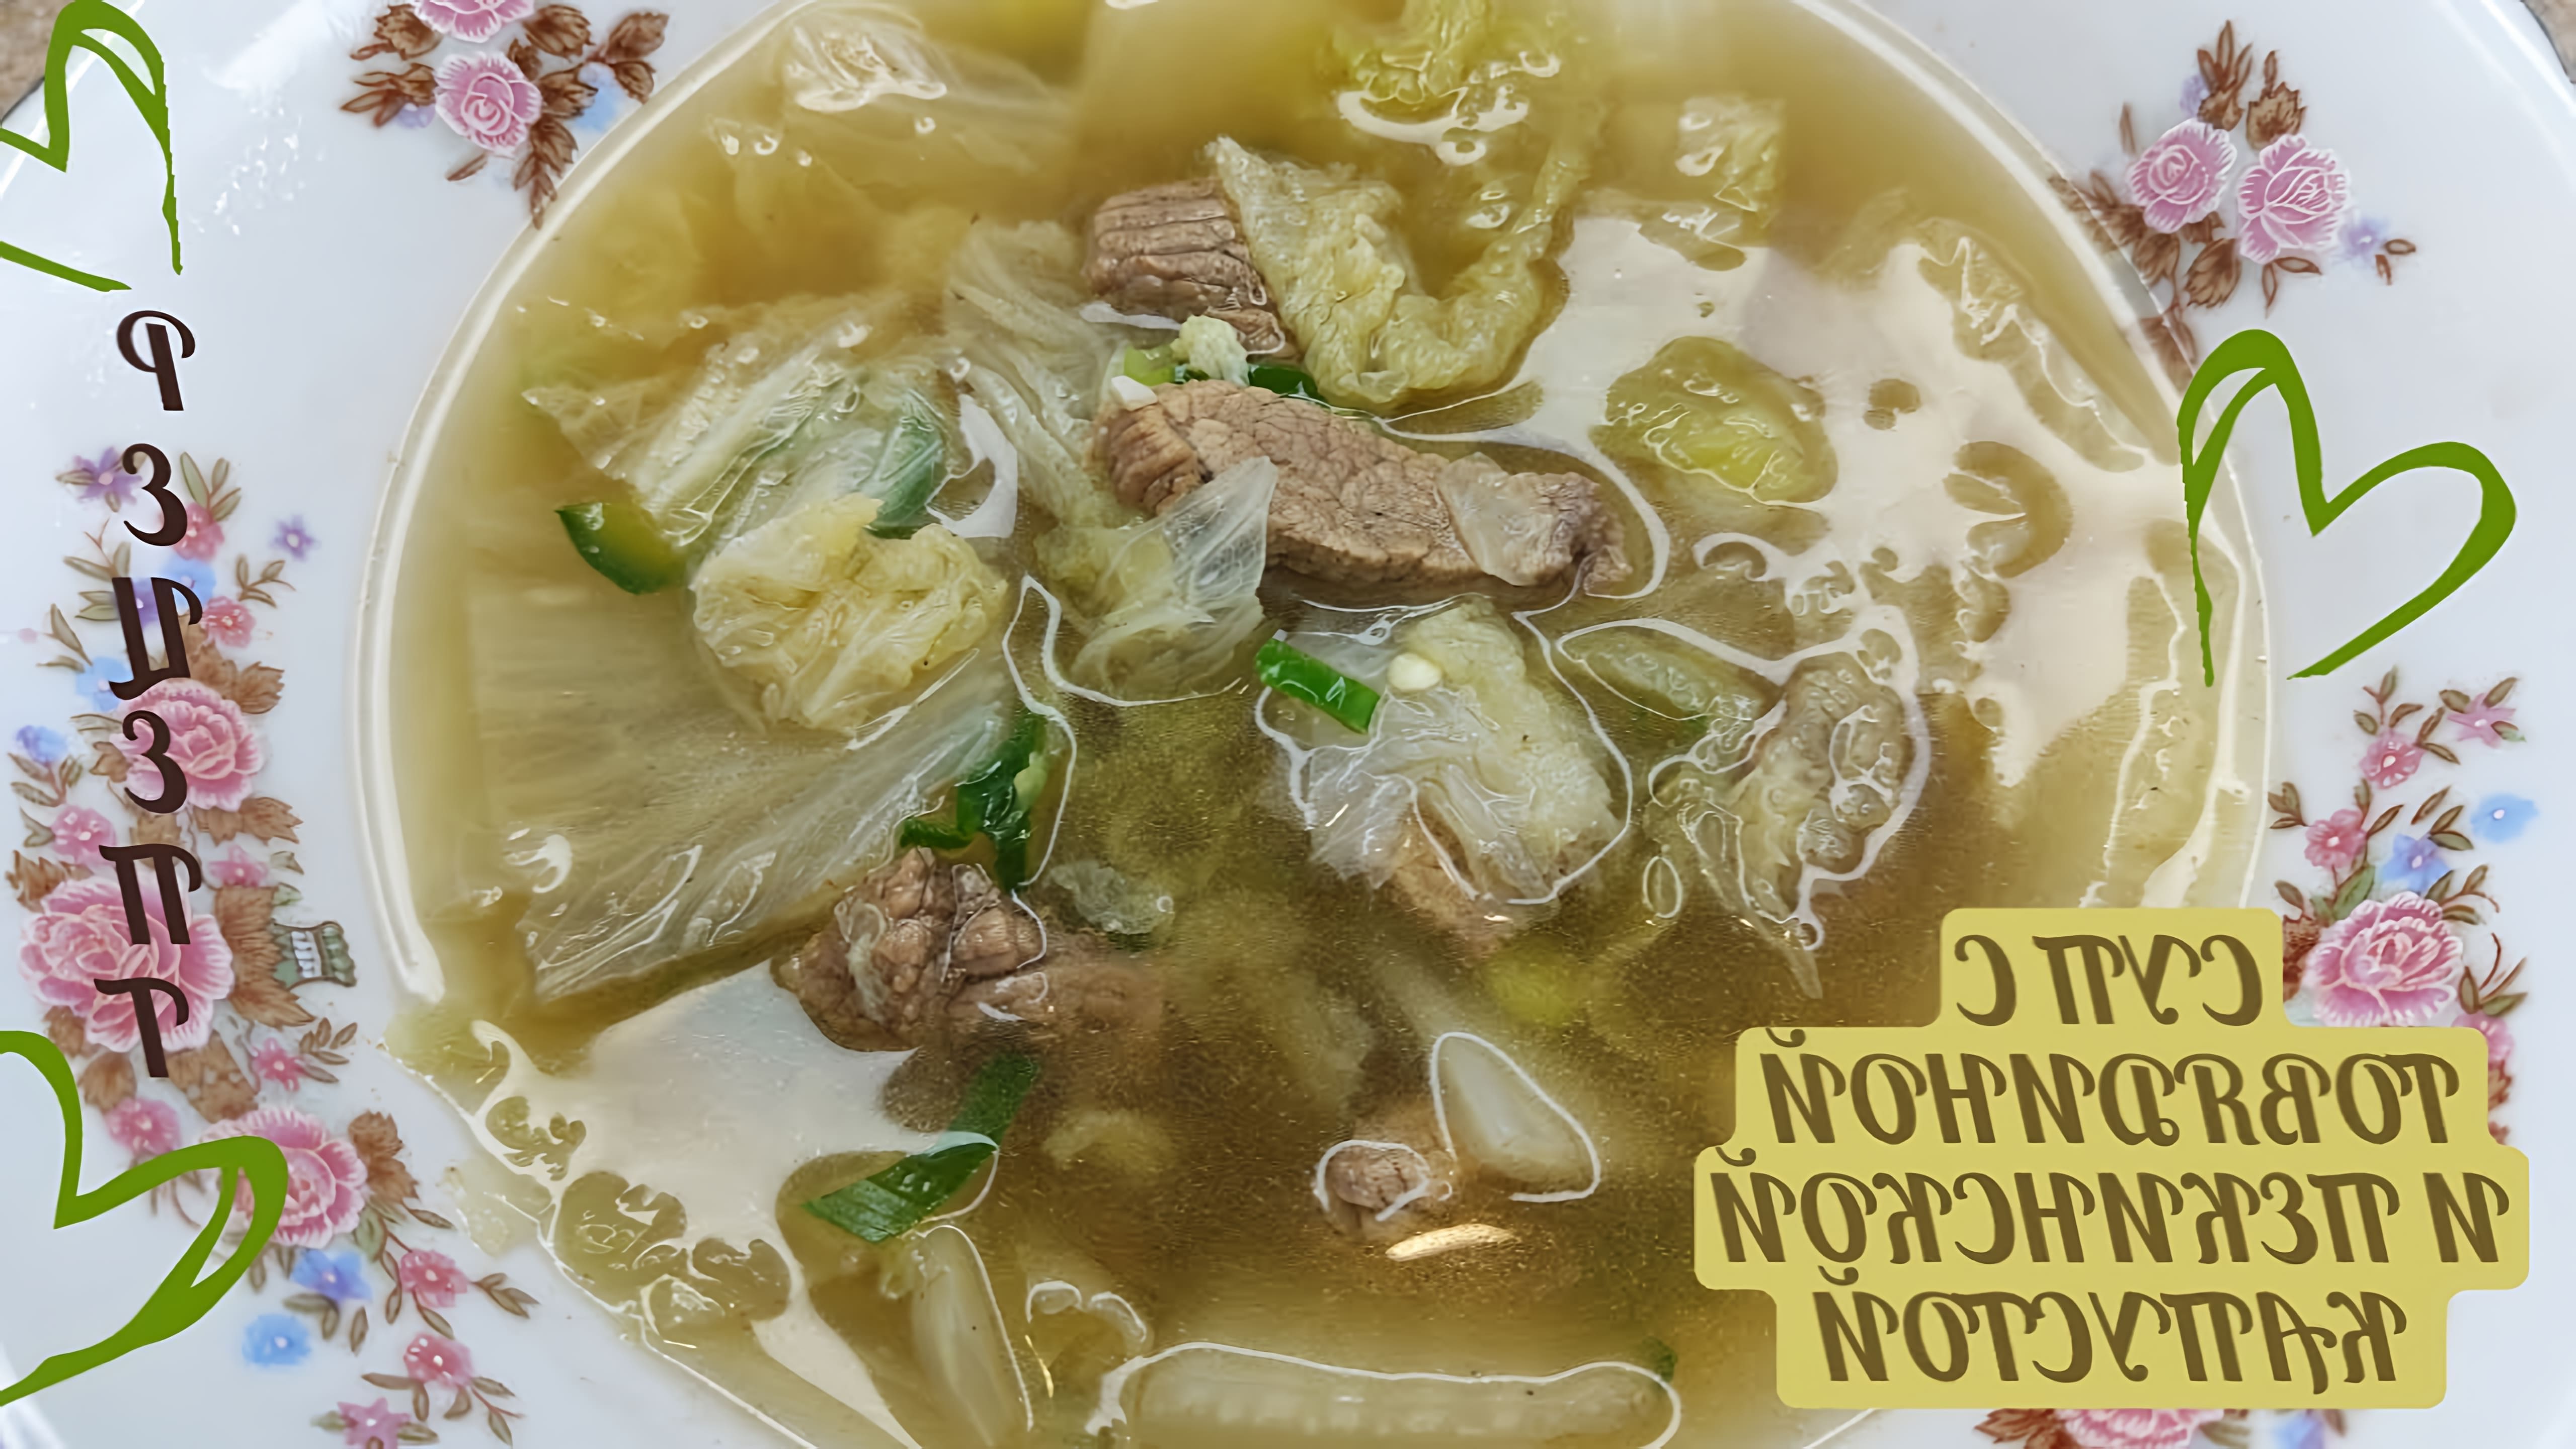 В этом видео демонстрируется рецепт корейского супа из пекинской капусты и говядины